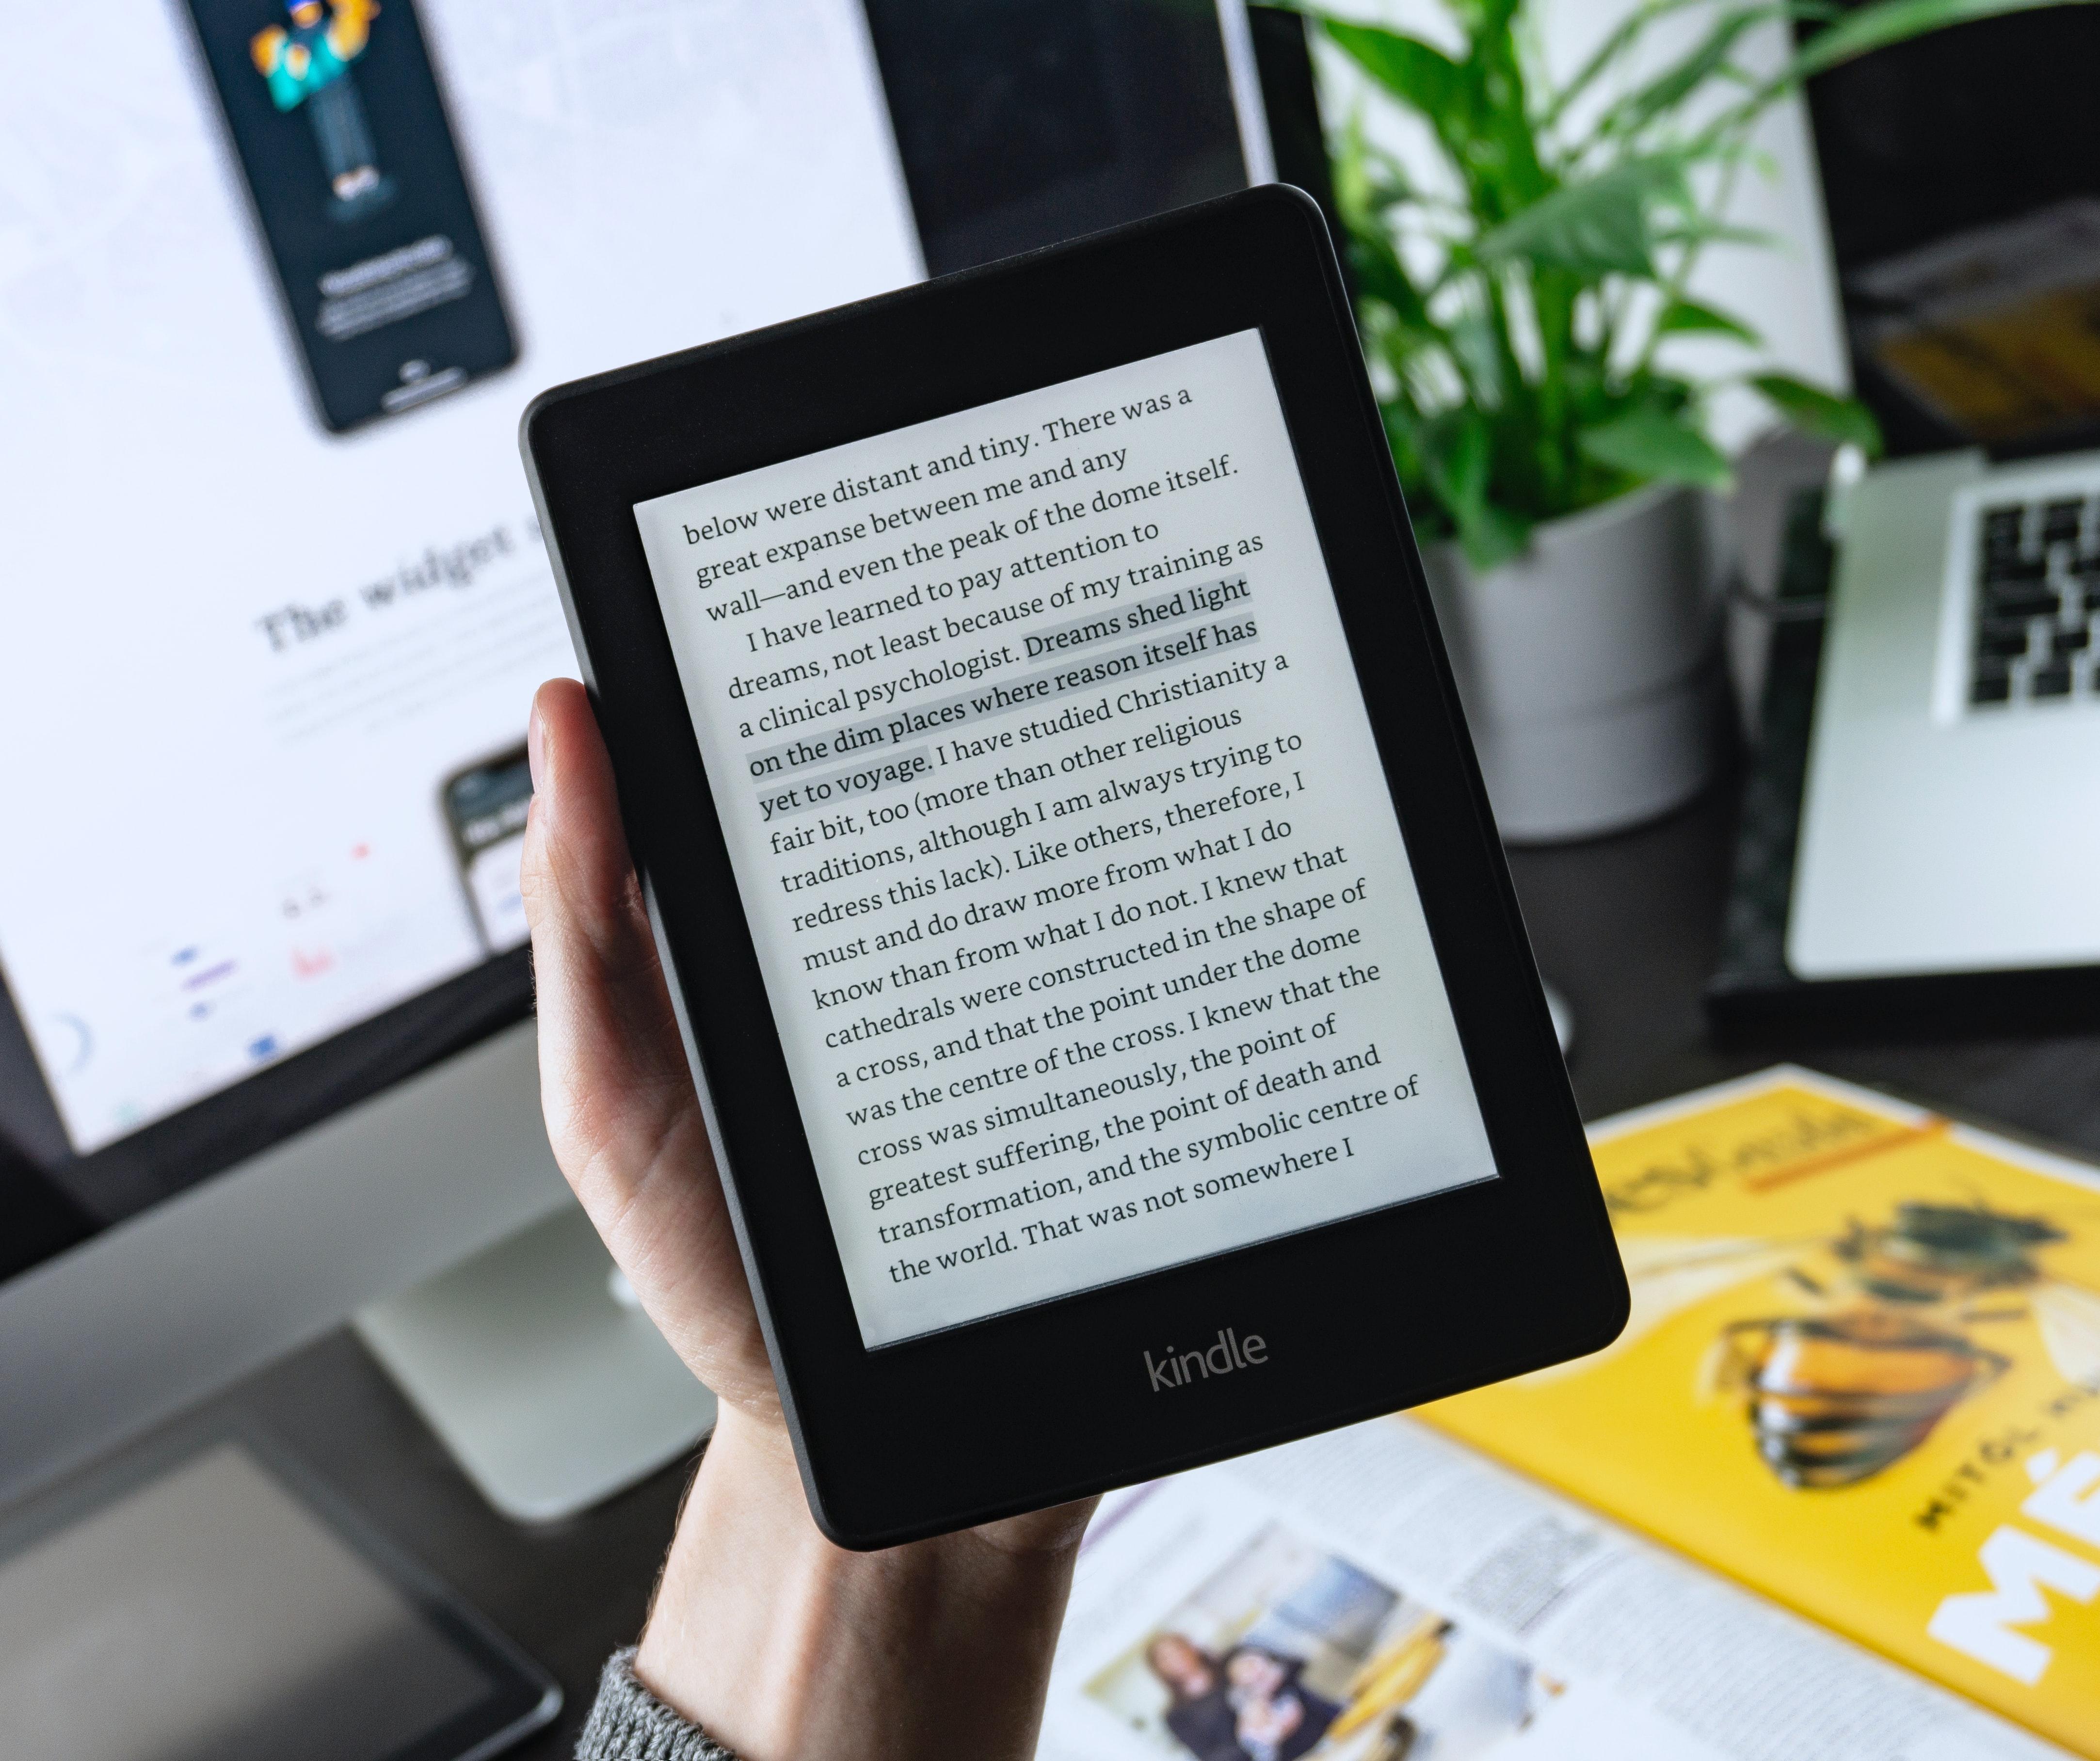 Cómo pasar libros a Kindle - Enviar a Kindle por correo electrónico, PC o  Calibre